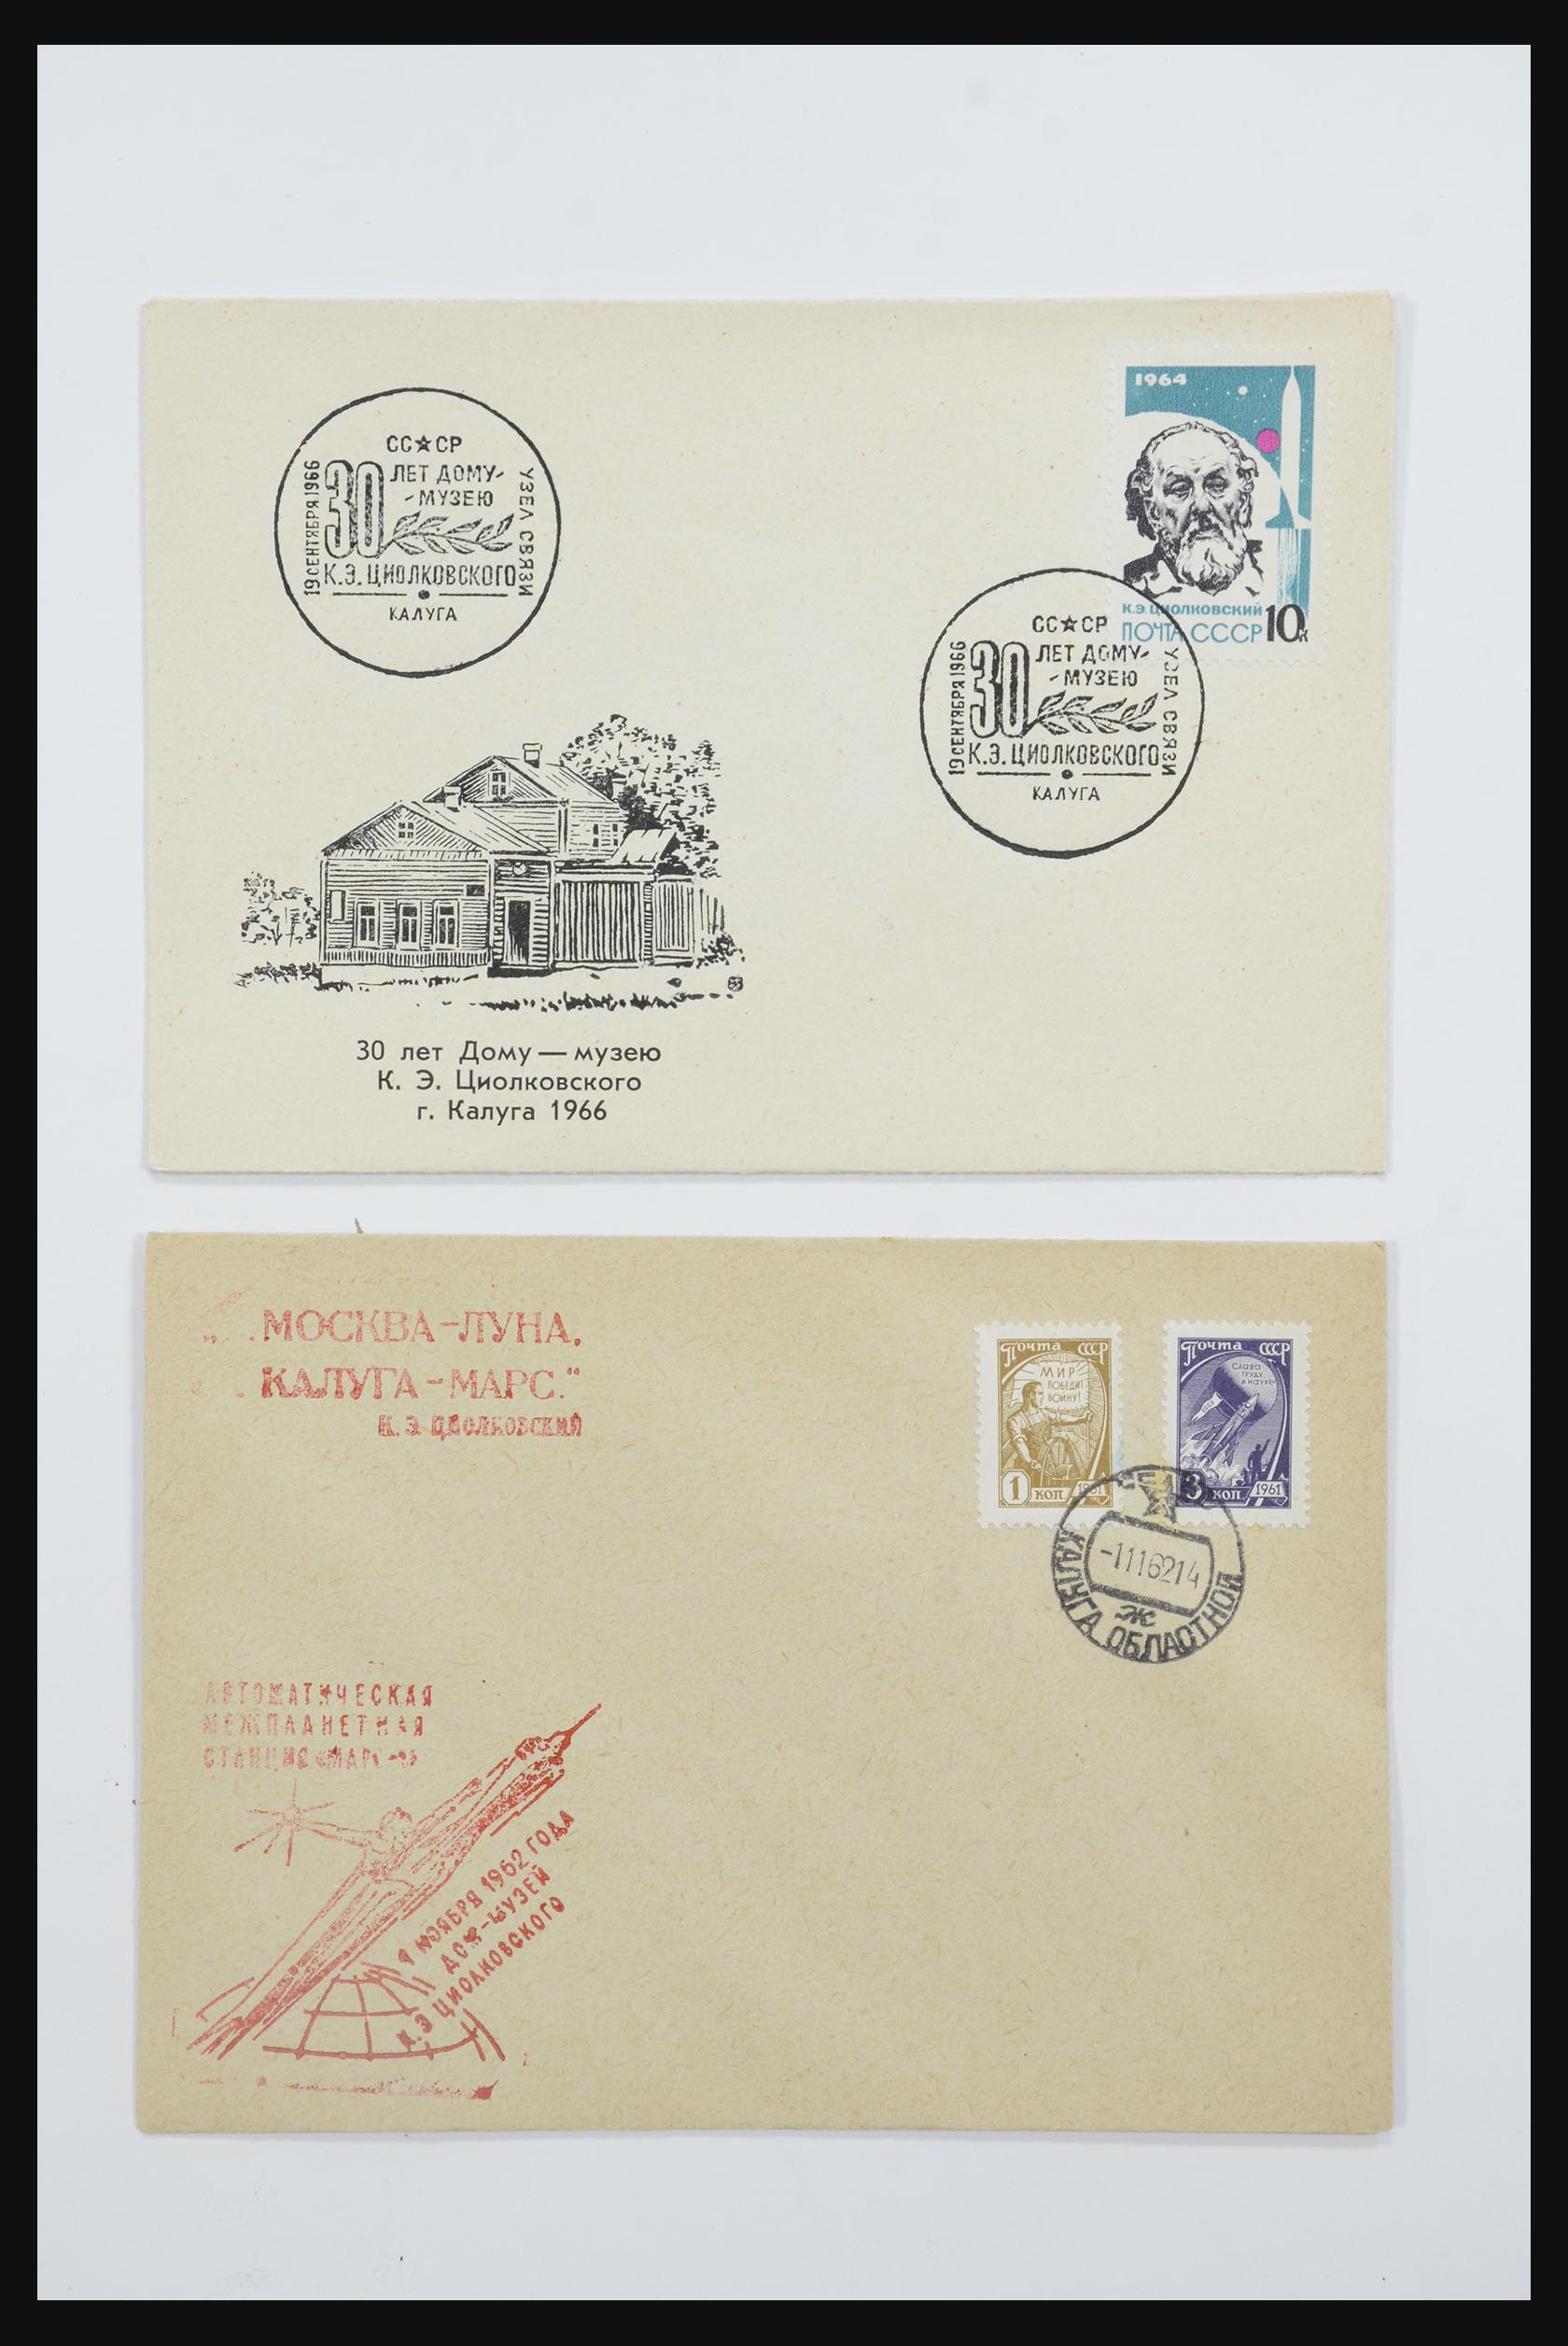 31605 0032 - 31605 Rusland postwaardestukken jaren 50-60.